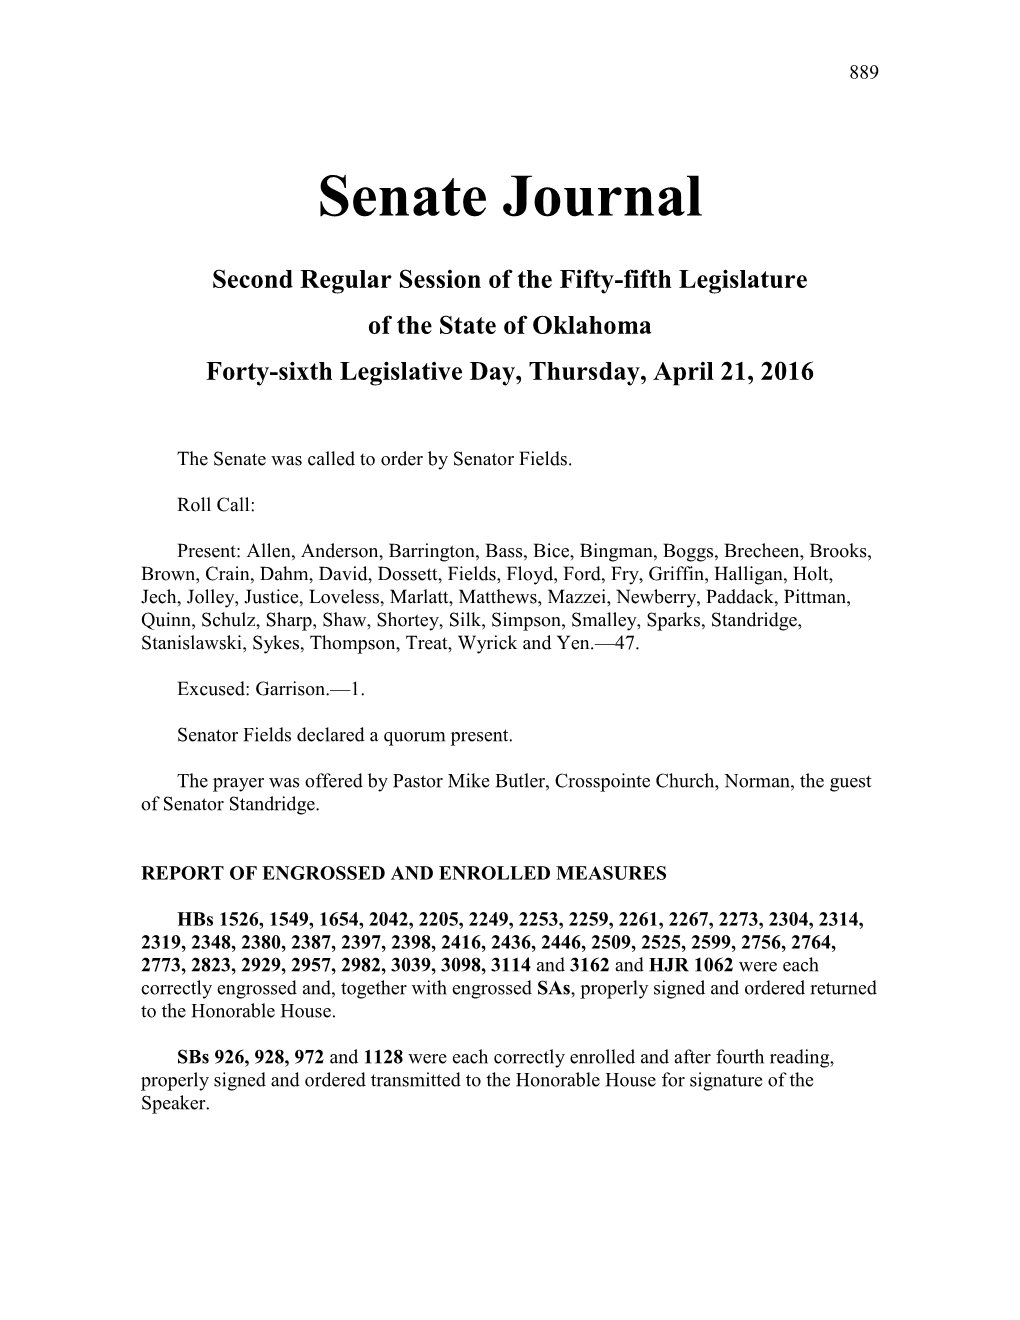 Senate Journal Apr 21, 2016